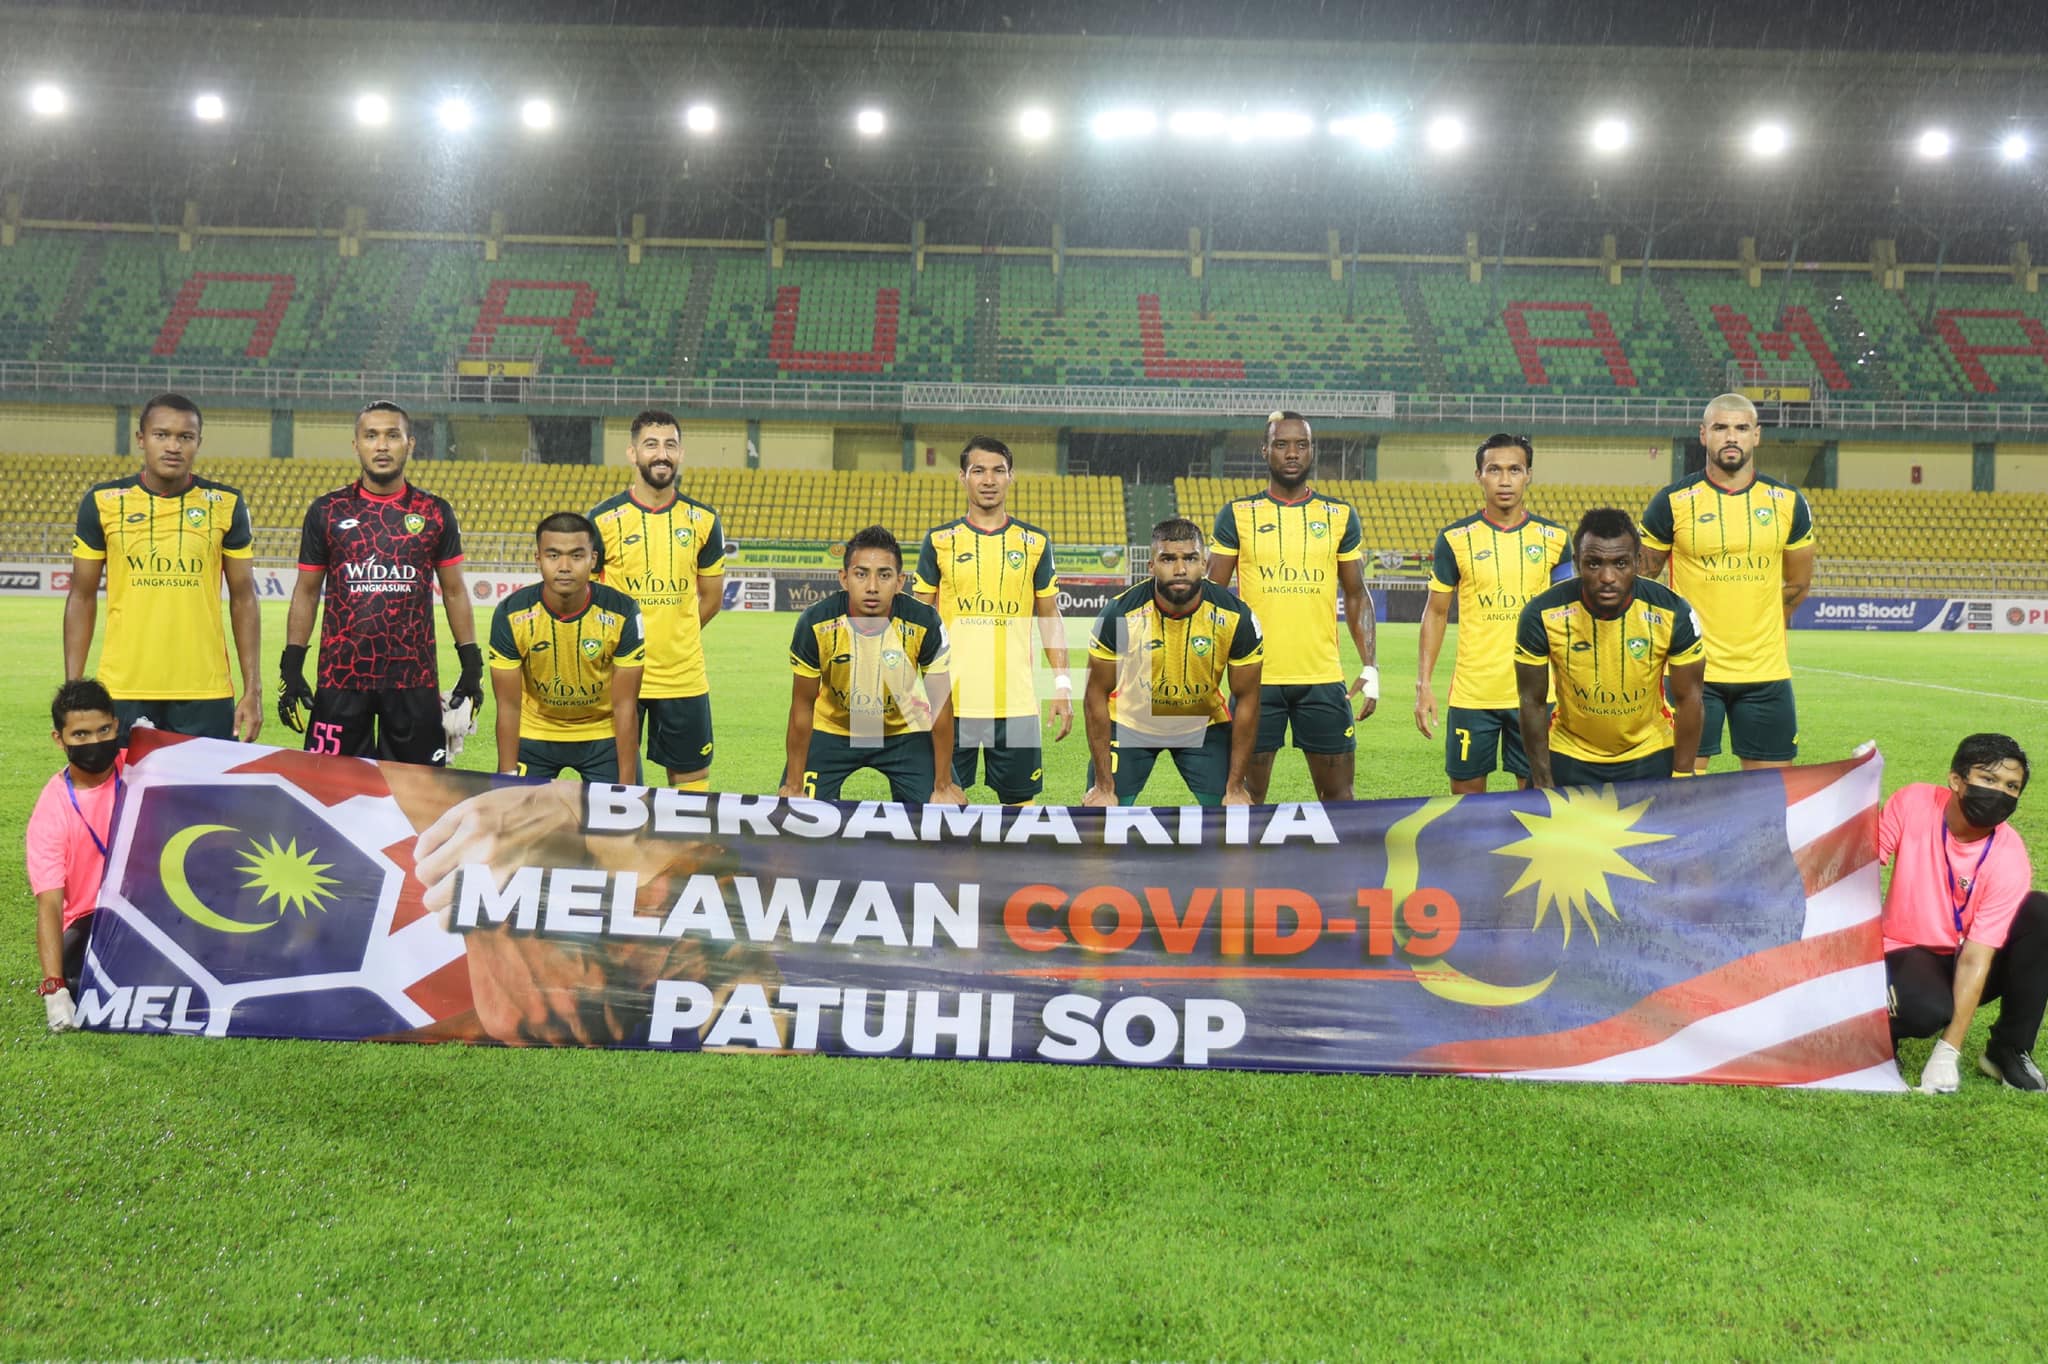 Liga Malaysia